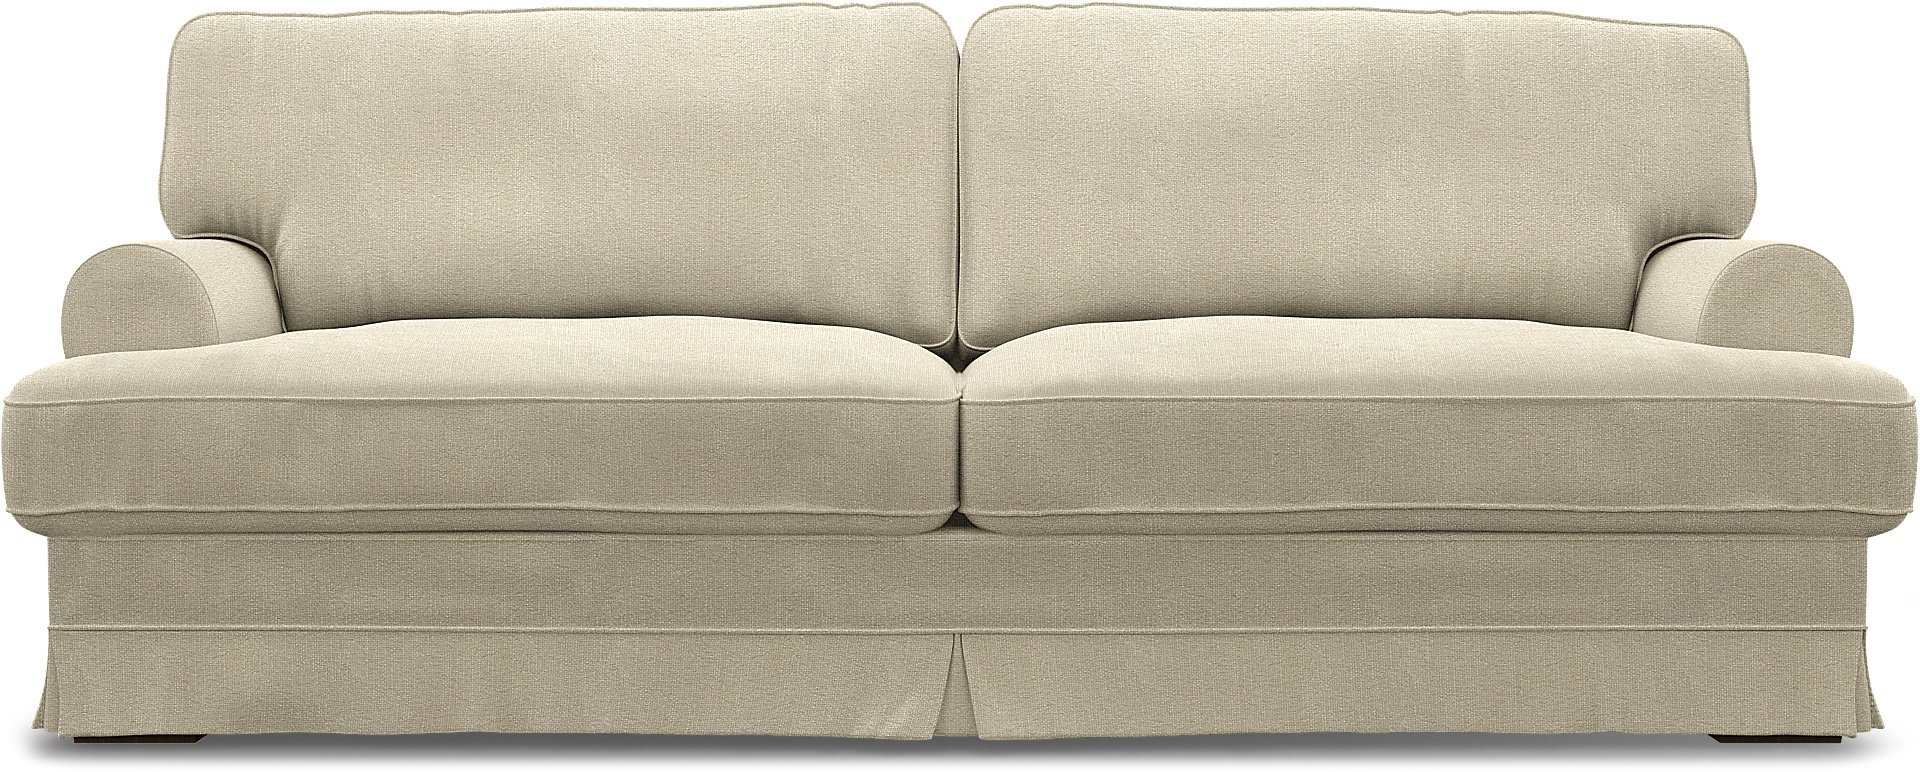 IKEA - Ekeskog 3 Seater Sofa Cover, Cream, Boucle & Texture - Bemz